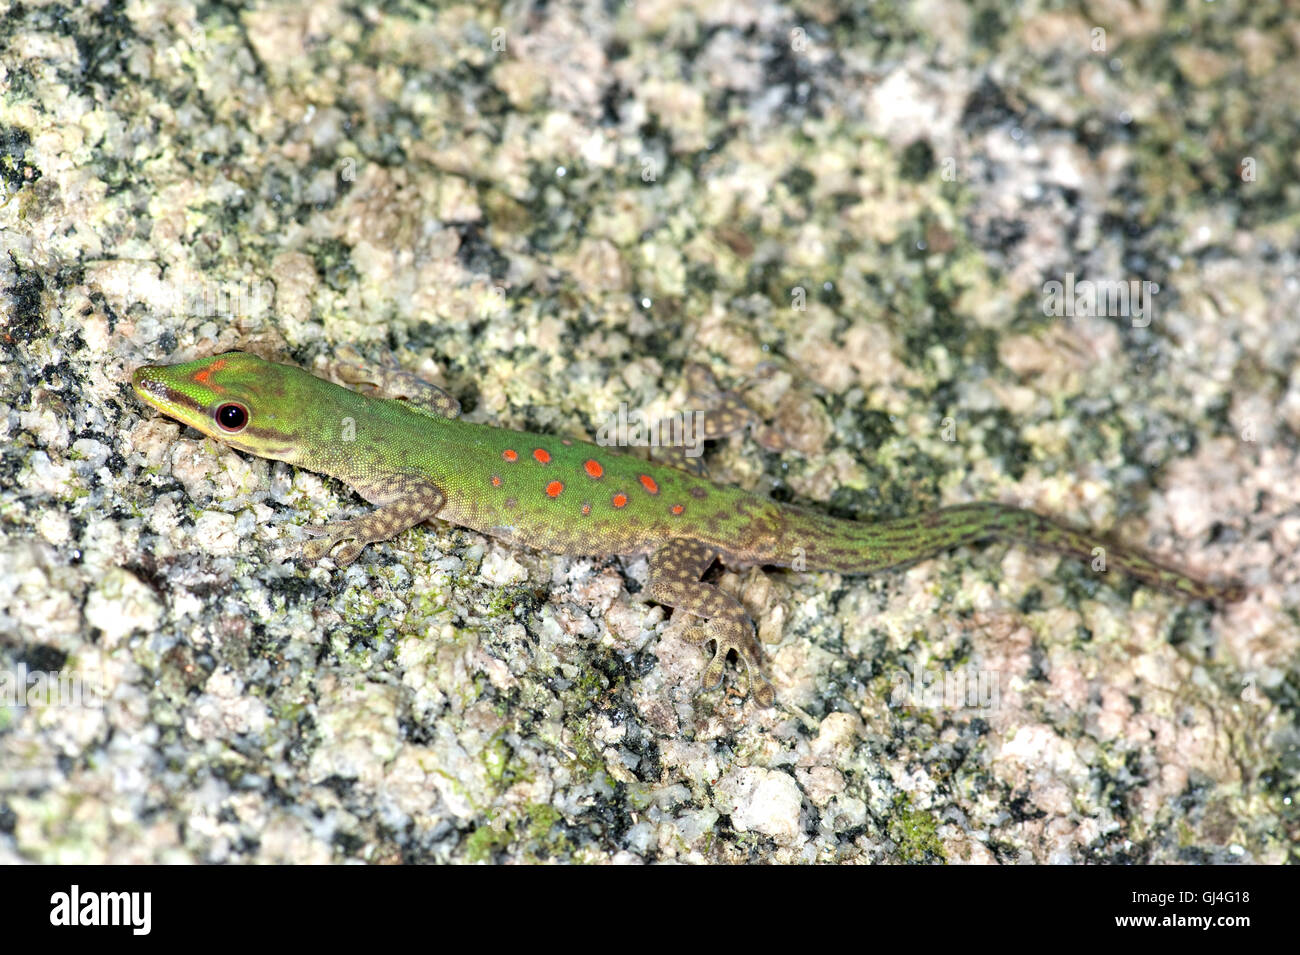 Madagascar Day Gecko Phelsuma madagascariensis Stock Photo